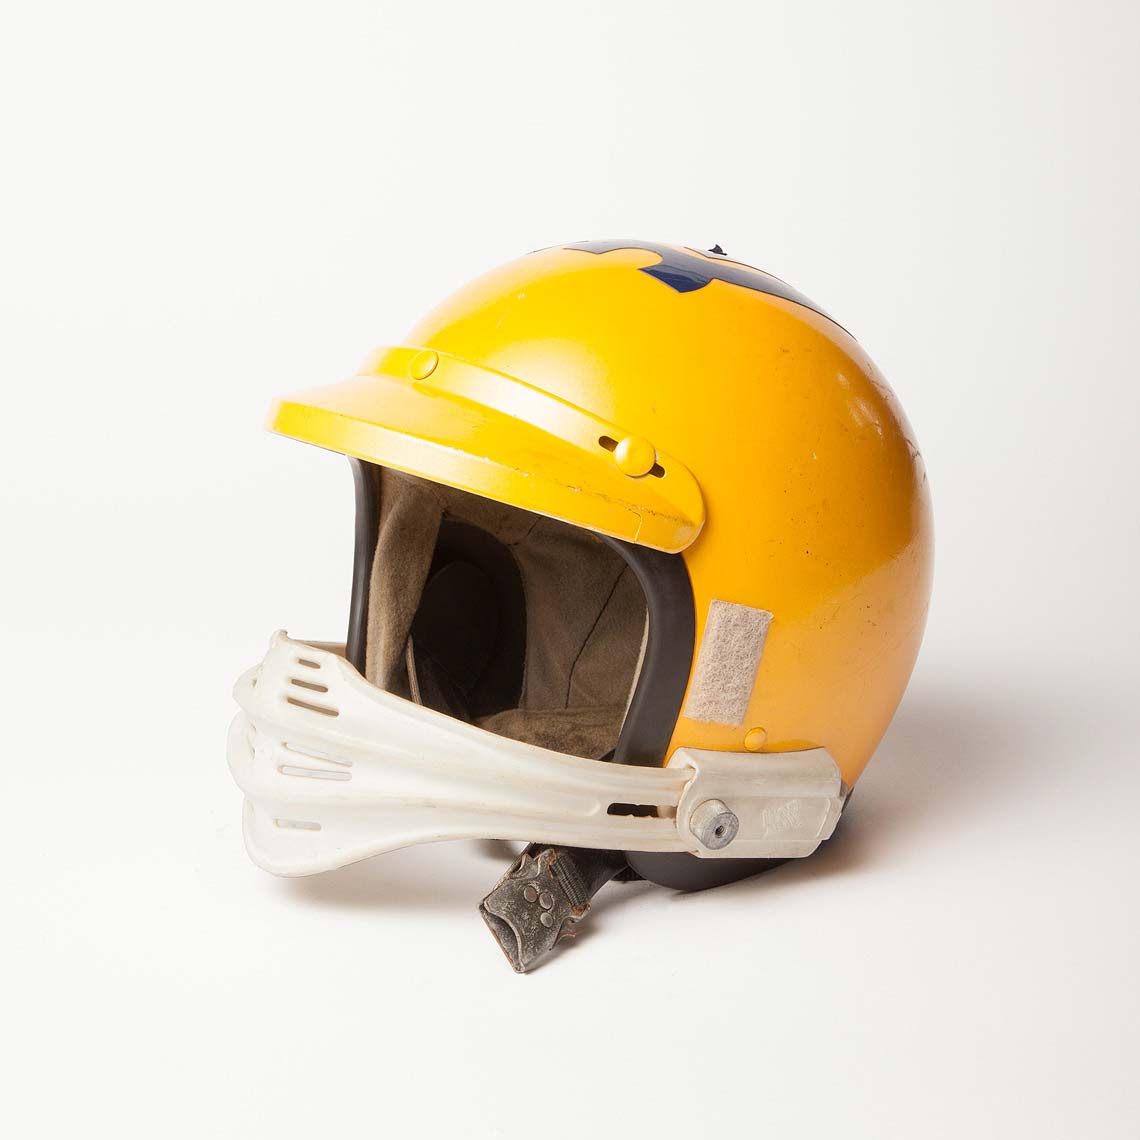 20120717-_MG_9830_Helmet.jpg